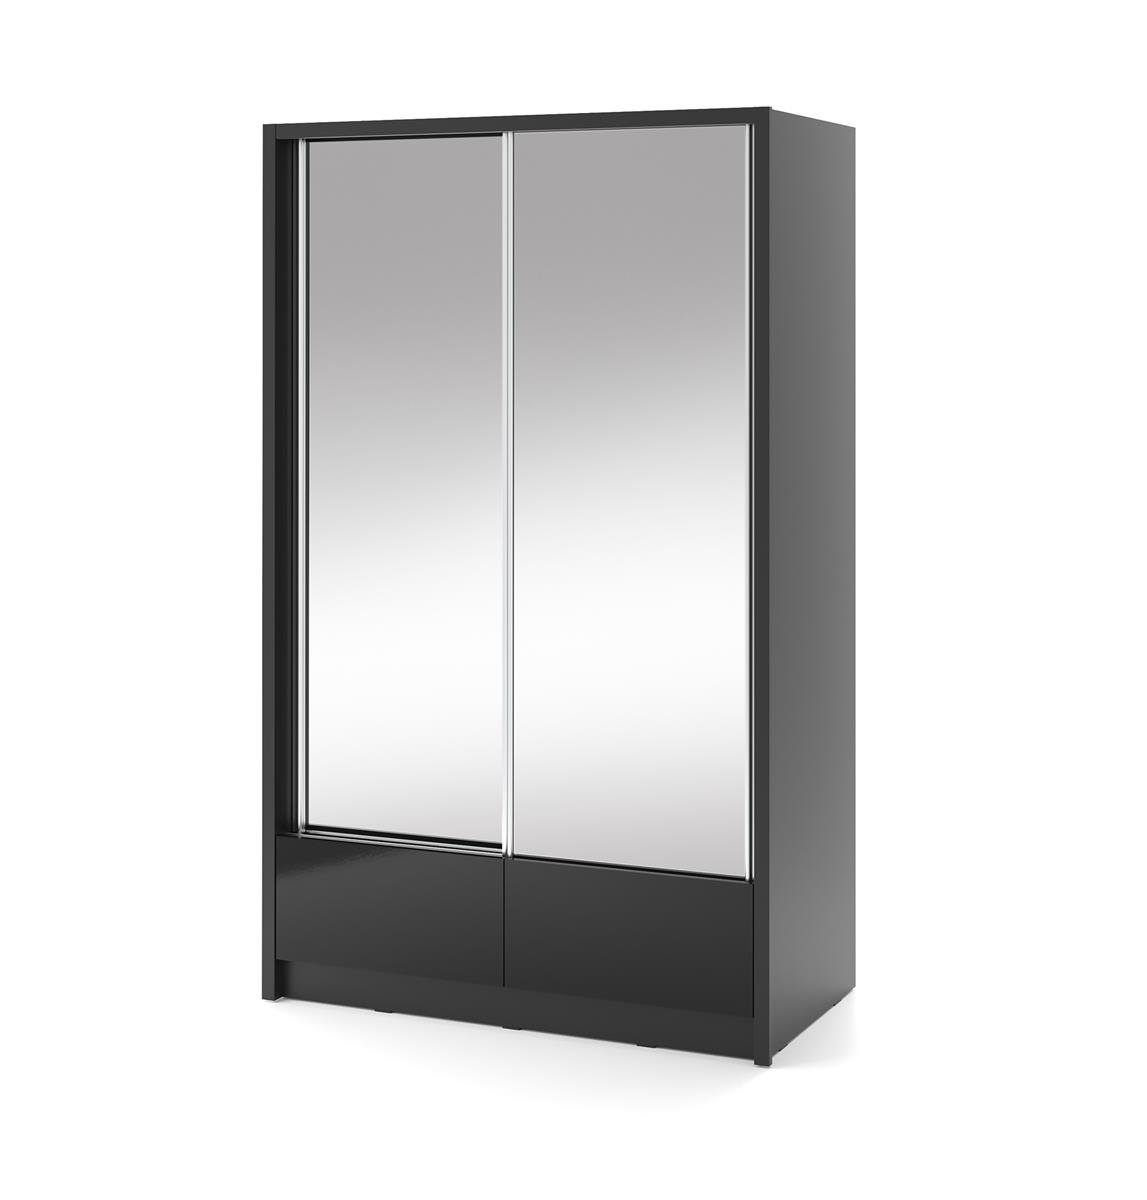 Beautysofa Wohnzimmer Kleiderschrank, Spiegelnd, Lara Spiegelschrank II 2x mit Schiebtüren für (weißes Schrank Garderobe) schwarzes oder